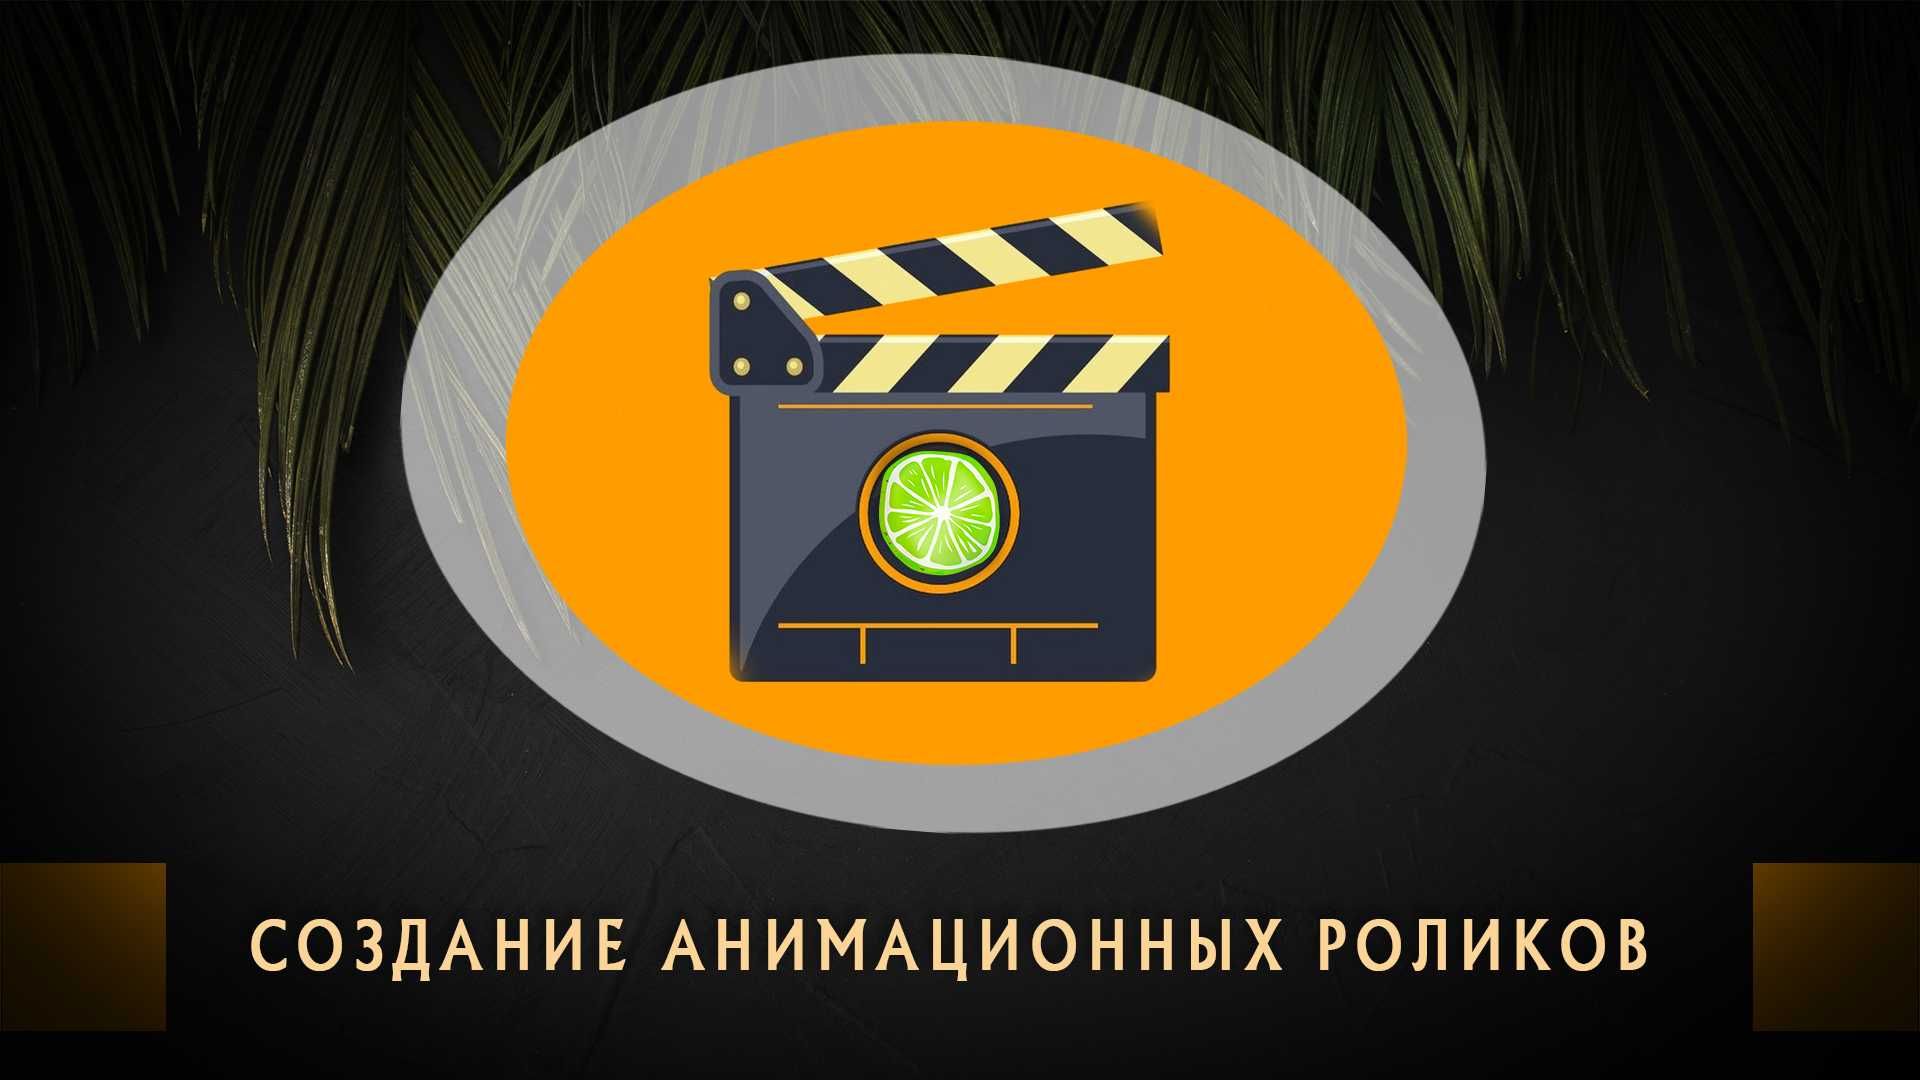 Рекламная Видео съемка, Создание 2D/3D анимационных роликов в Ташкенте